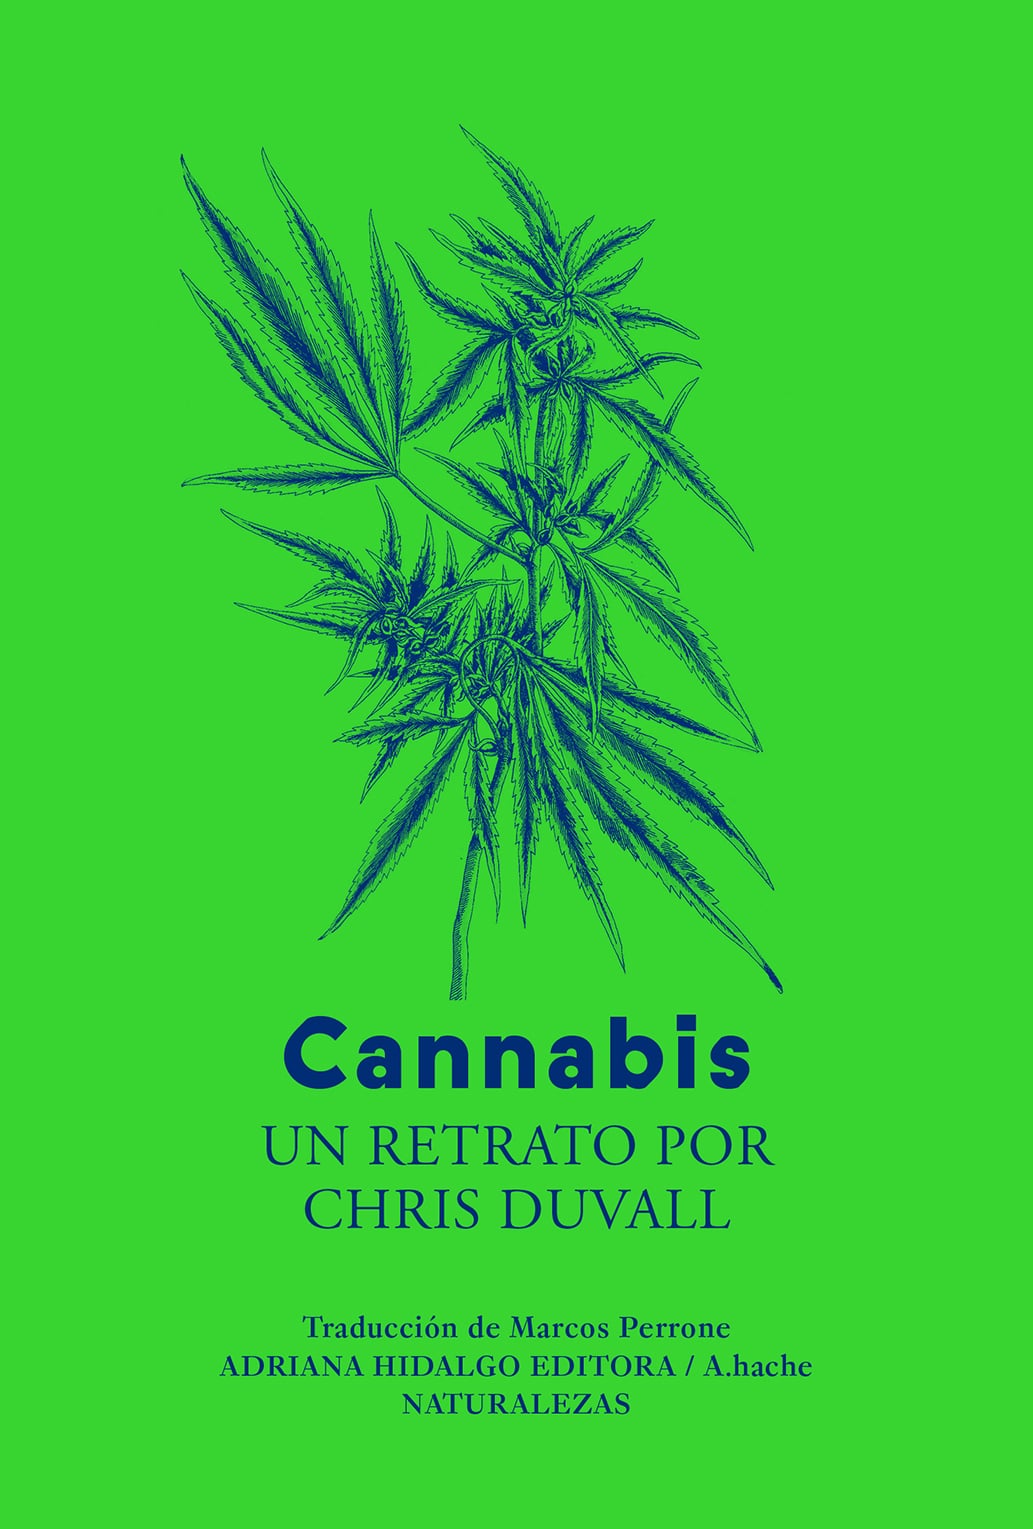 Un Nuevo Libro Explora la Historia Cultural y Geográfica del Cannabis: ‘Tengo Sentimientos Encontrados con la Legalización’, dice su Autor